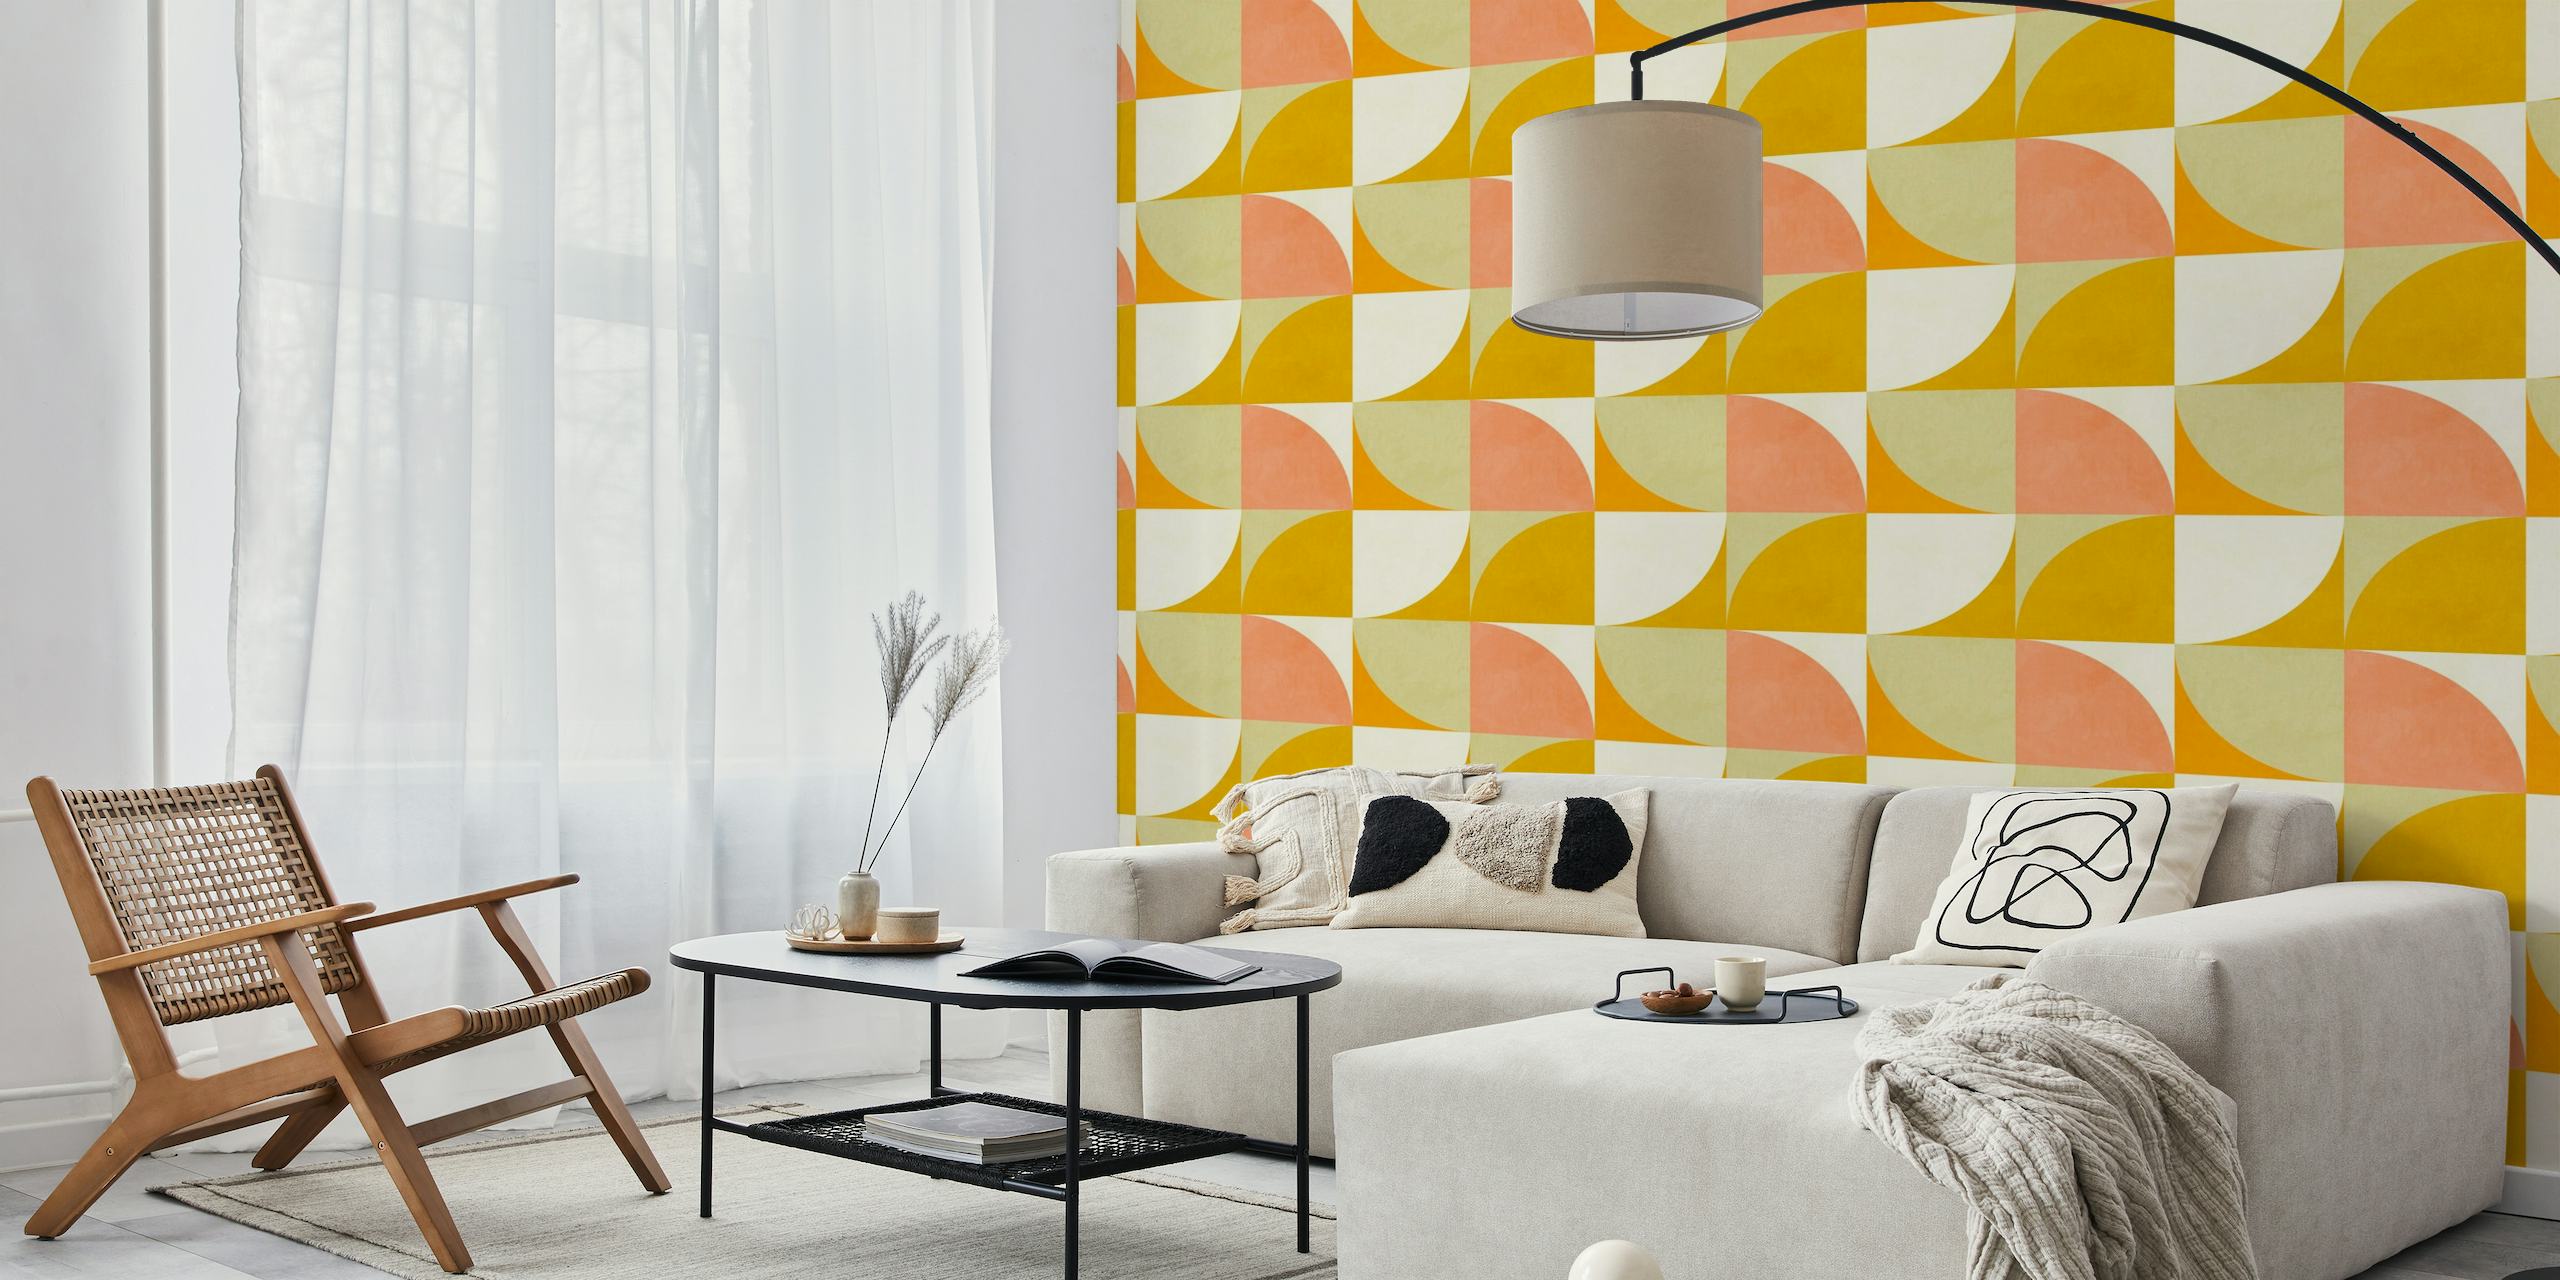 Bauhausin inspiroima seinämaalaus, jossa on rohkeita geometrisia muotoja punaisissa, oransseissa ja keltaisissa sävyissä